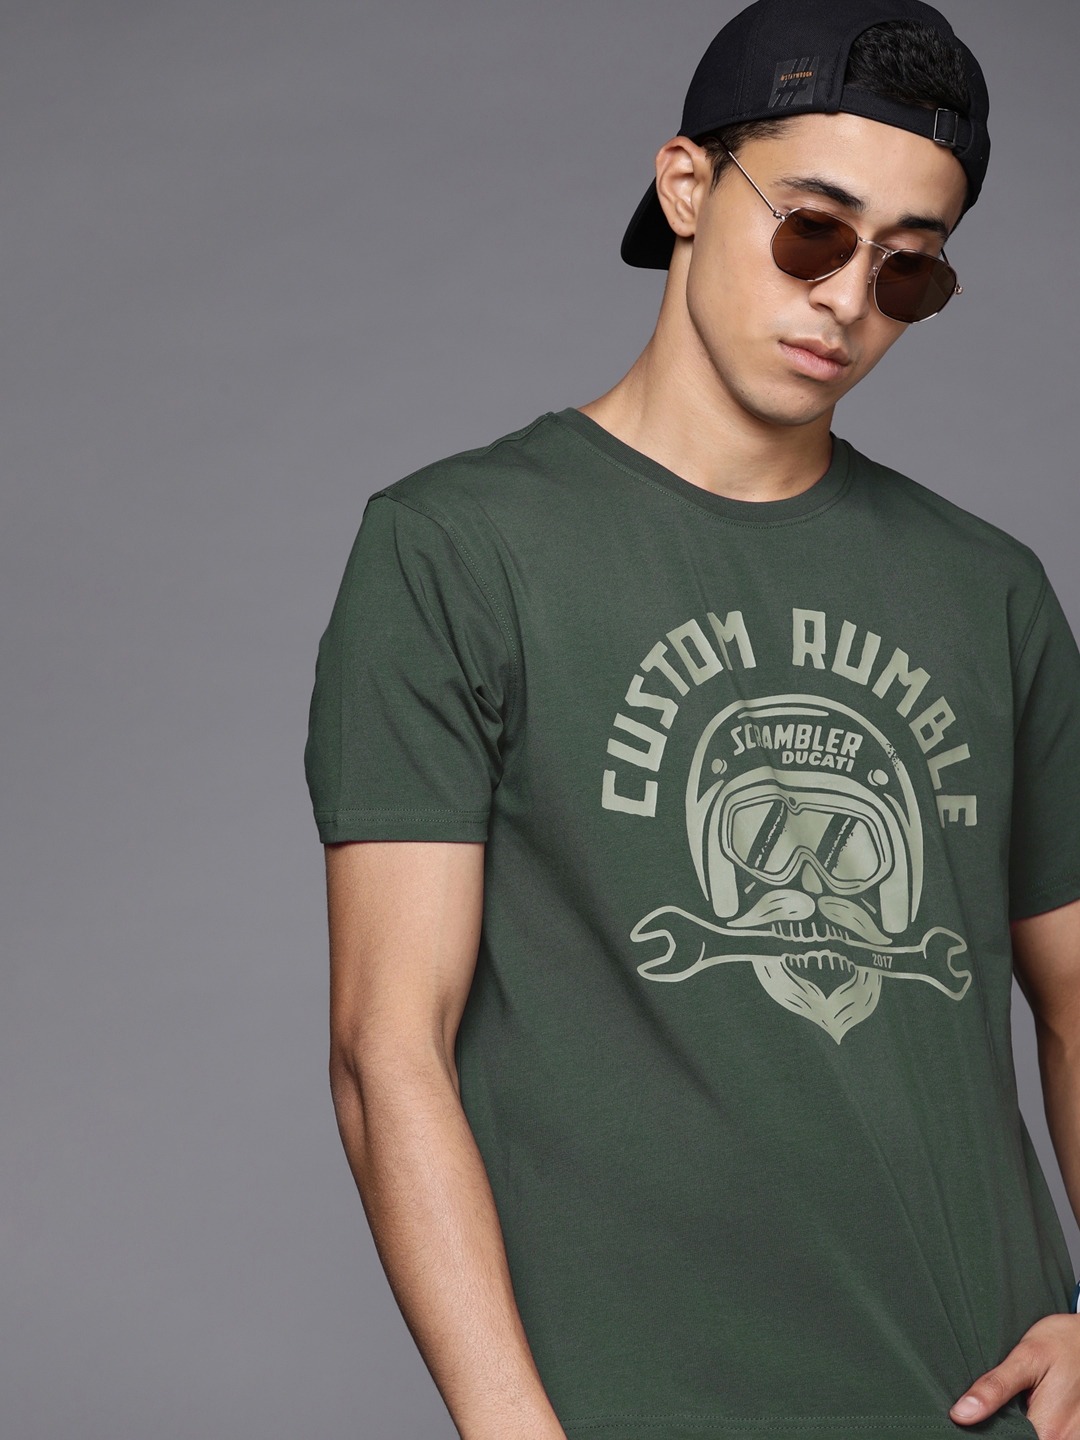 Buy Ducati Scrambler Men Olive Green Printed T Shirt - Tshirts for Men ...